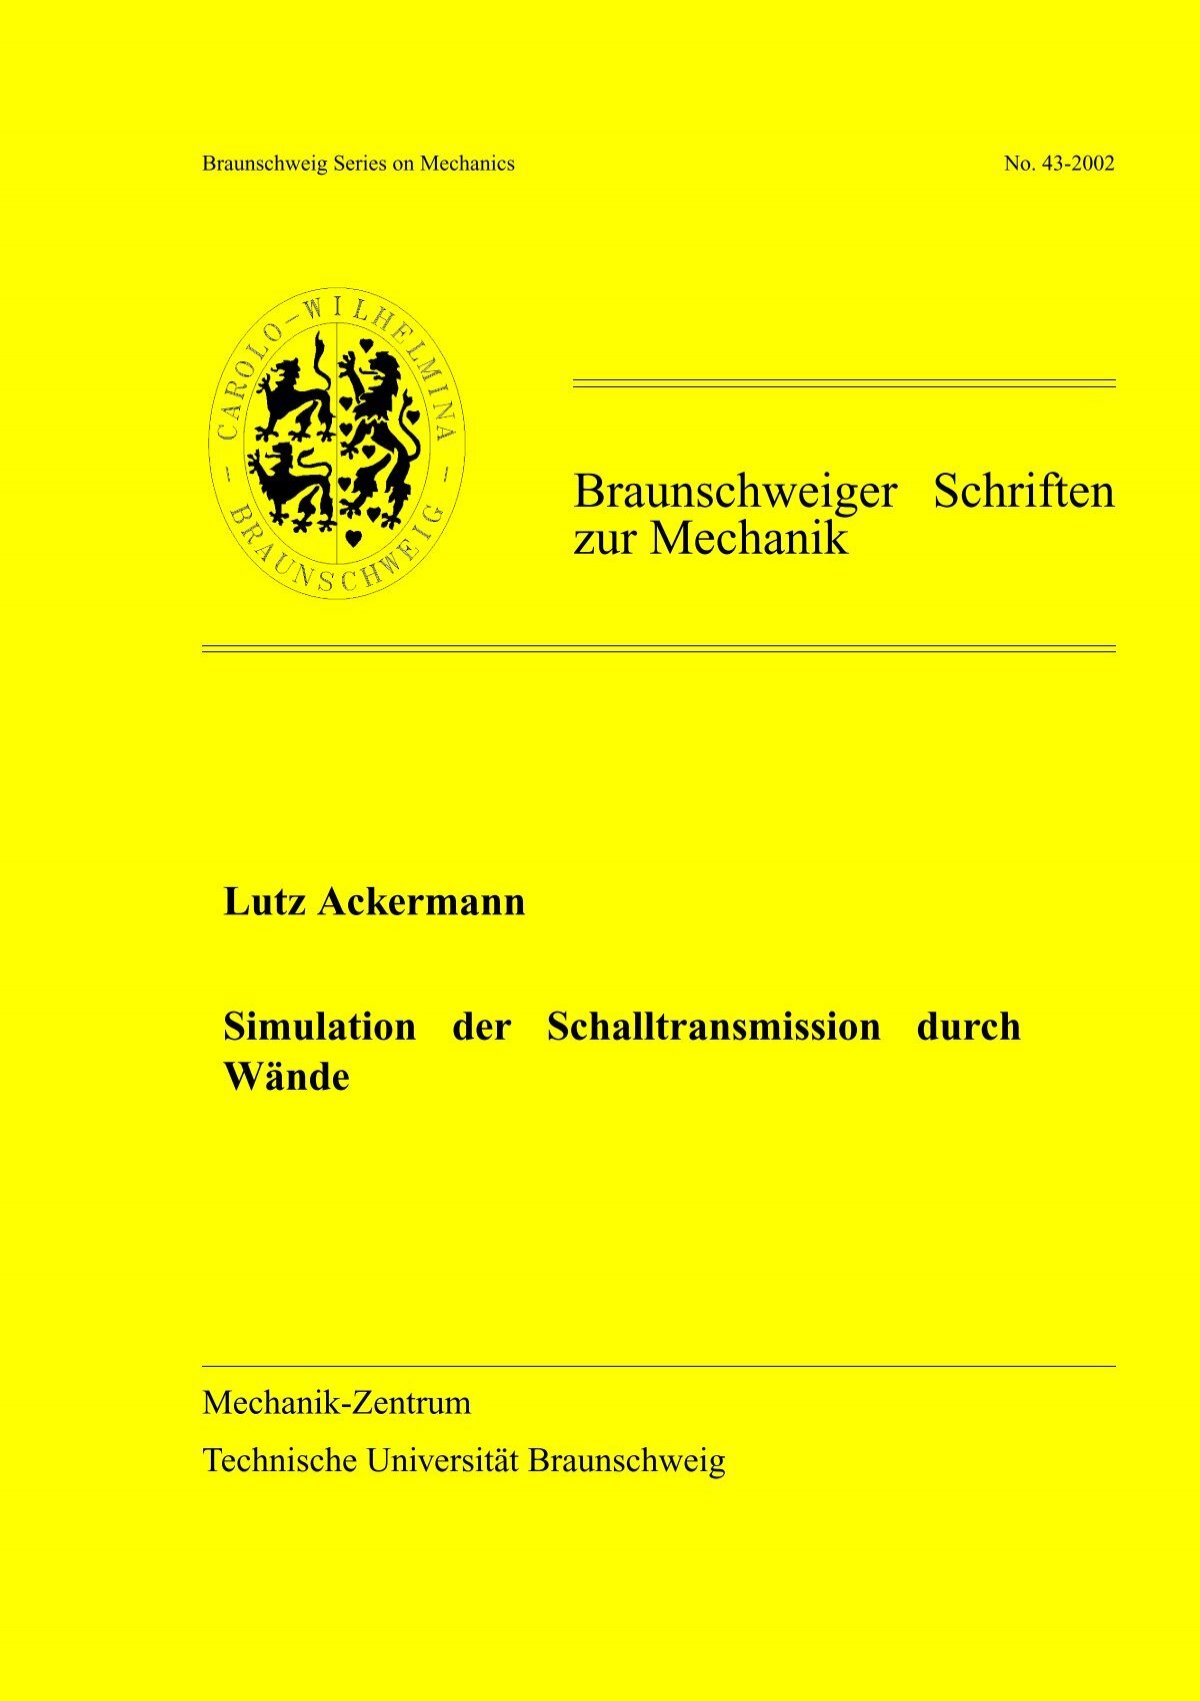 Erklärung der Ackermann-Tabelle in Deutschland